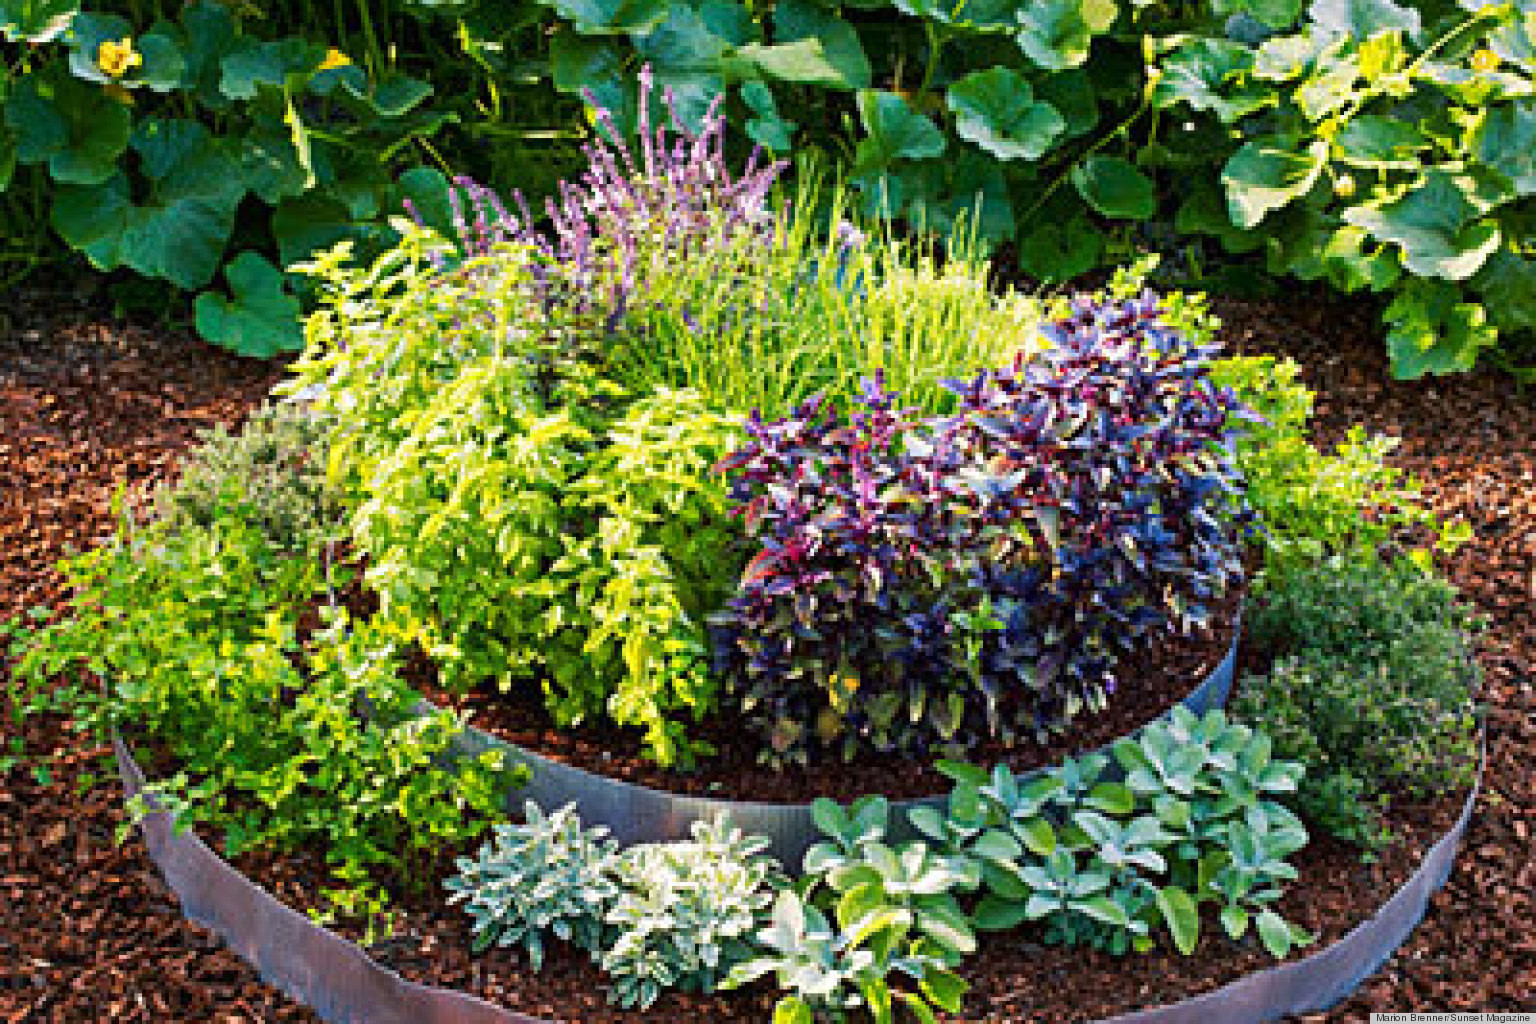 Best ideas about Raised Bed Garden Ideas
. Save or Pin 10 Raised Bed Garden Ideas Now.